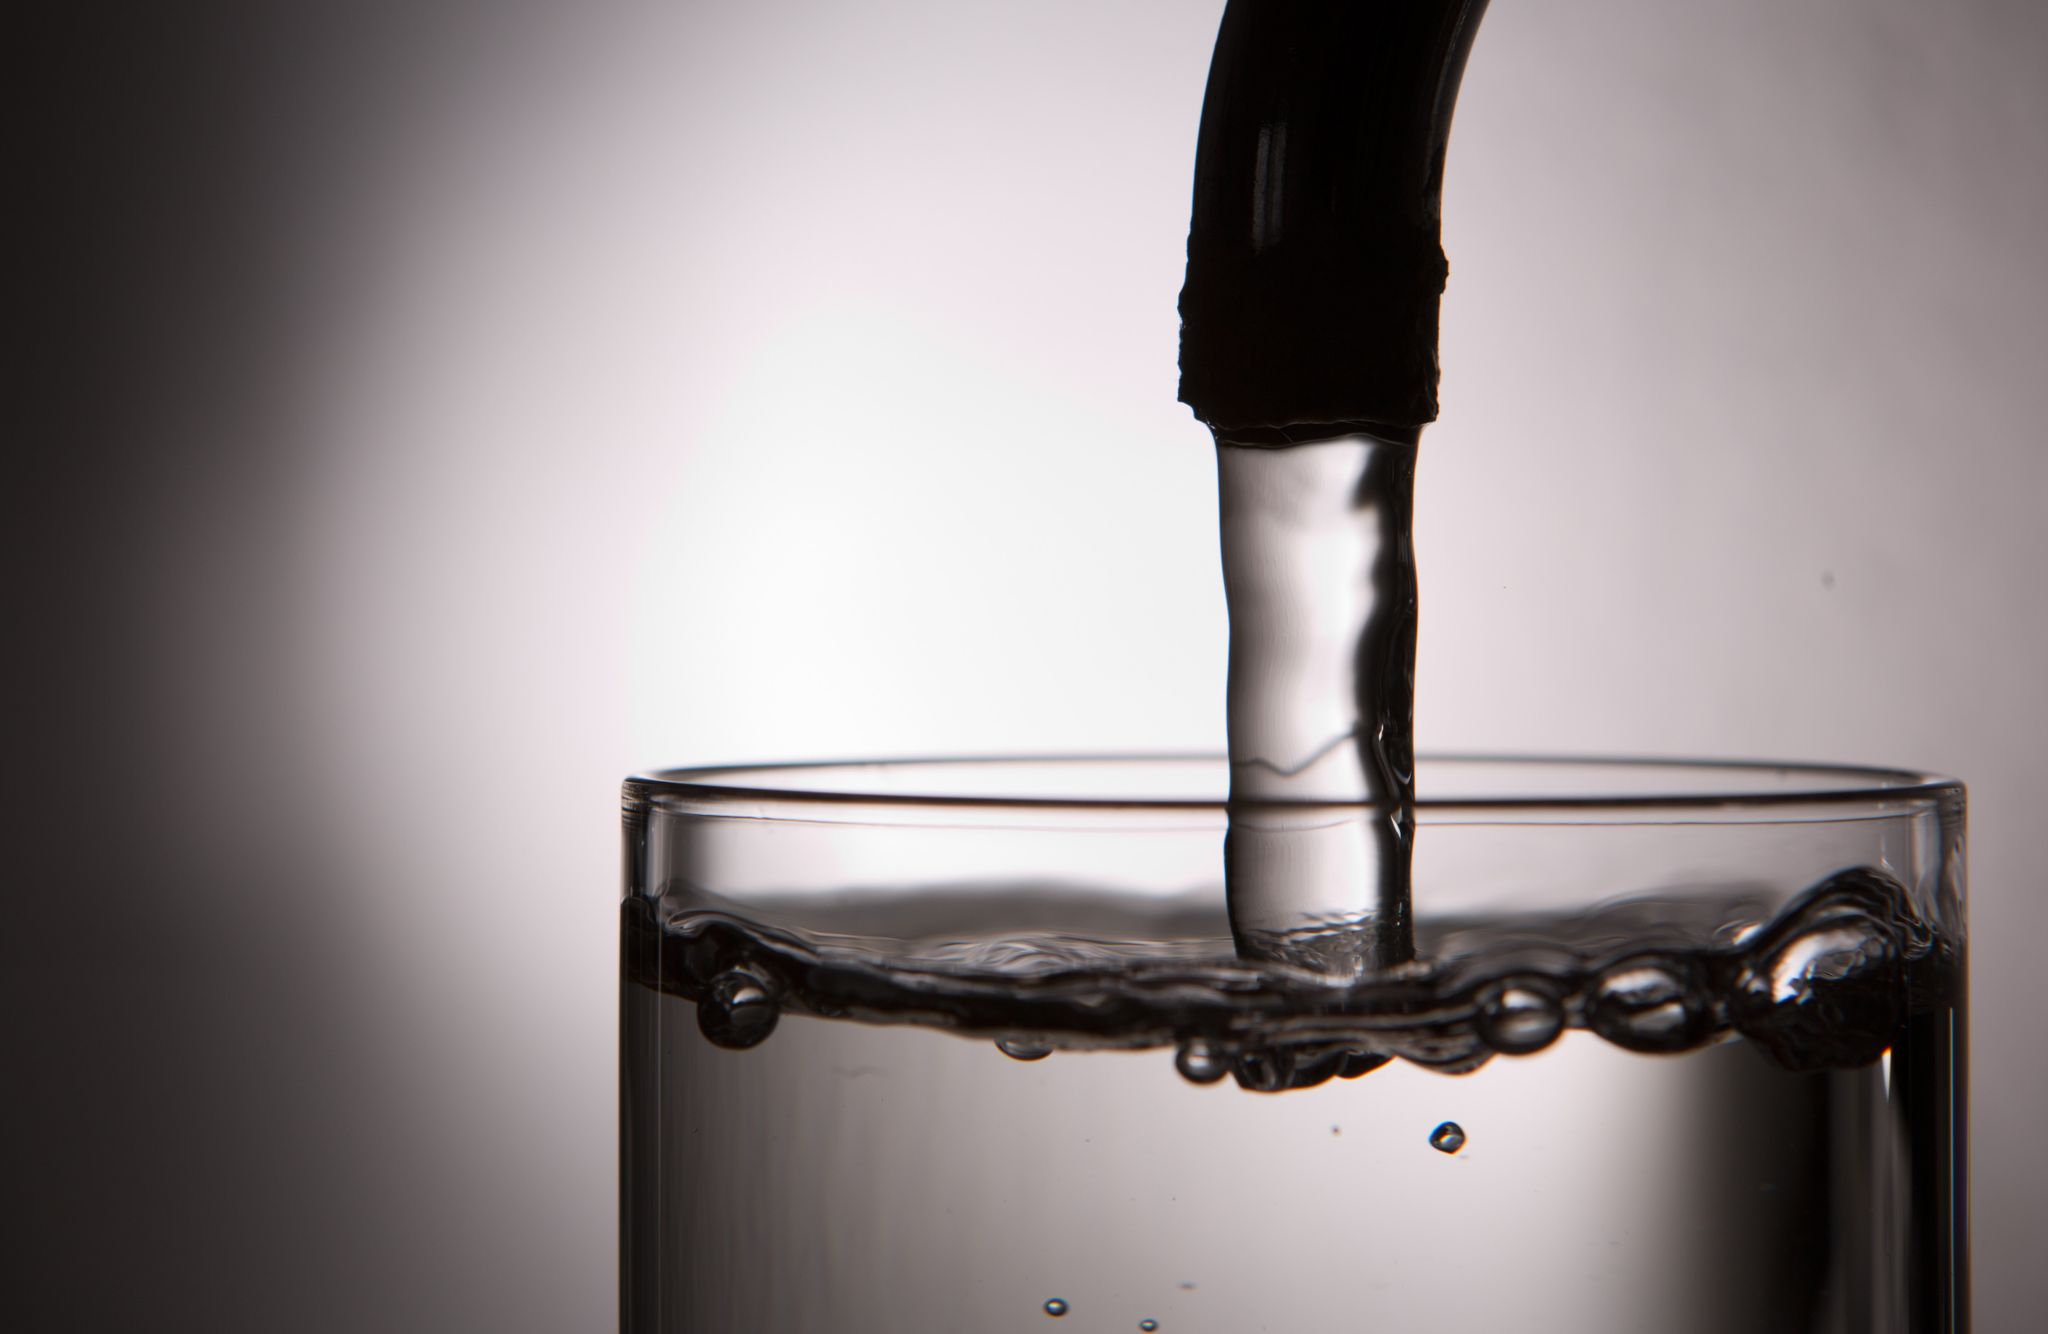 Leitungswasser läuft aus einem Wasserhahn in ein Glas.